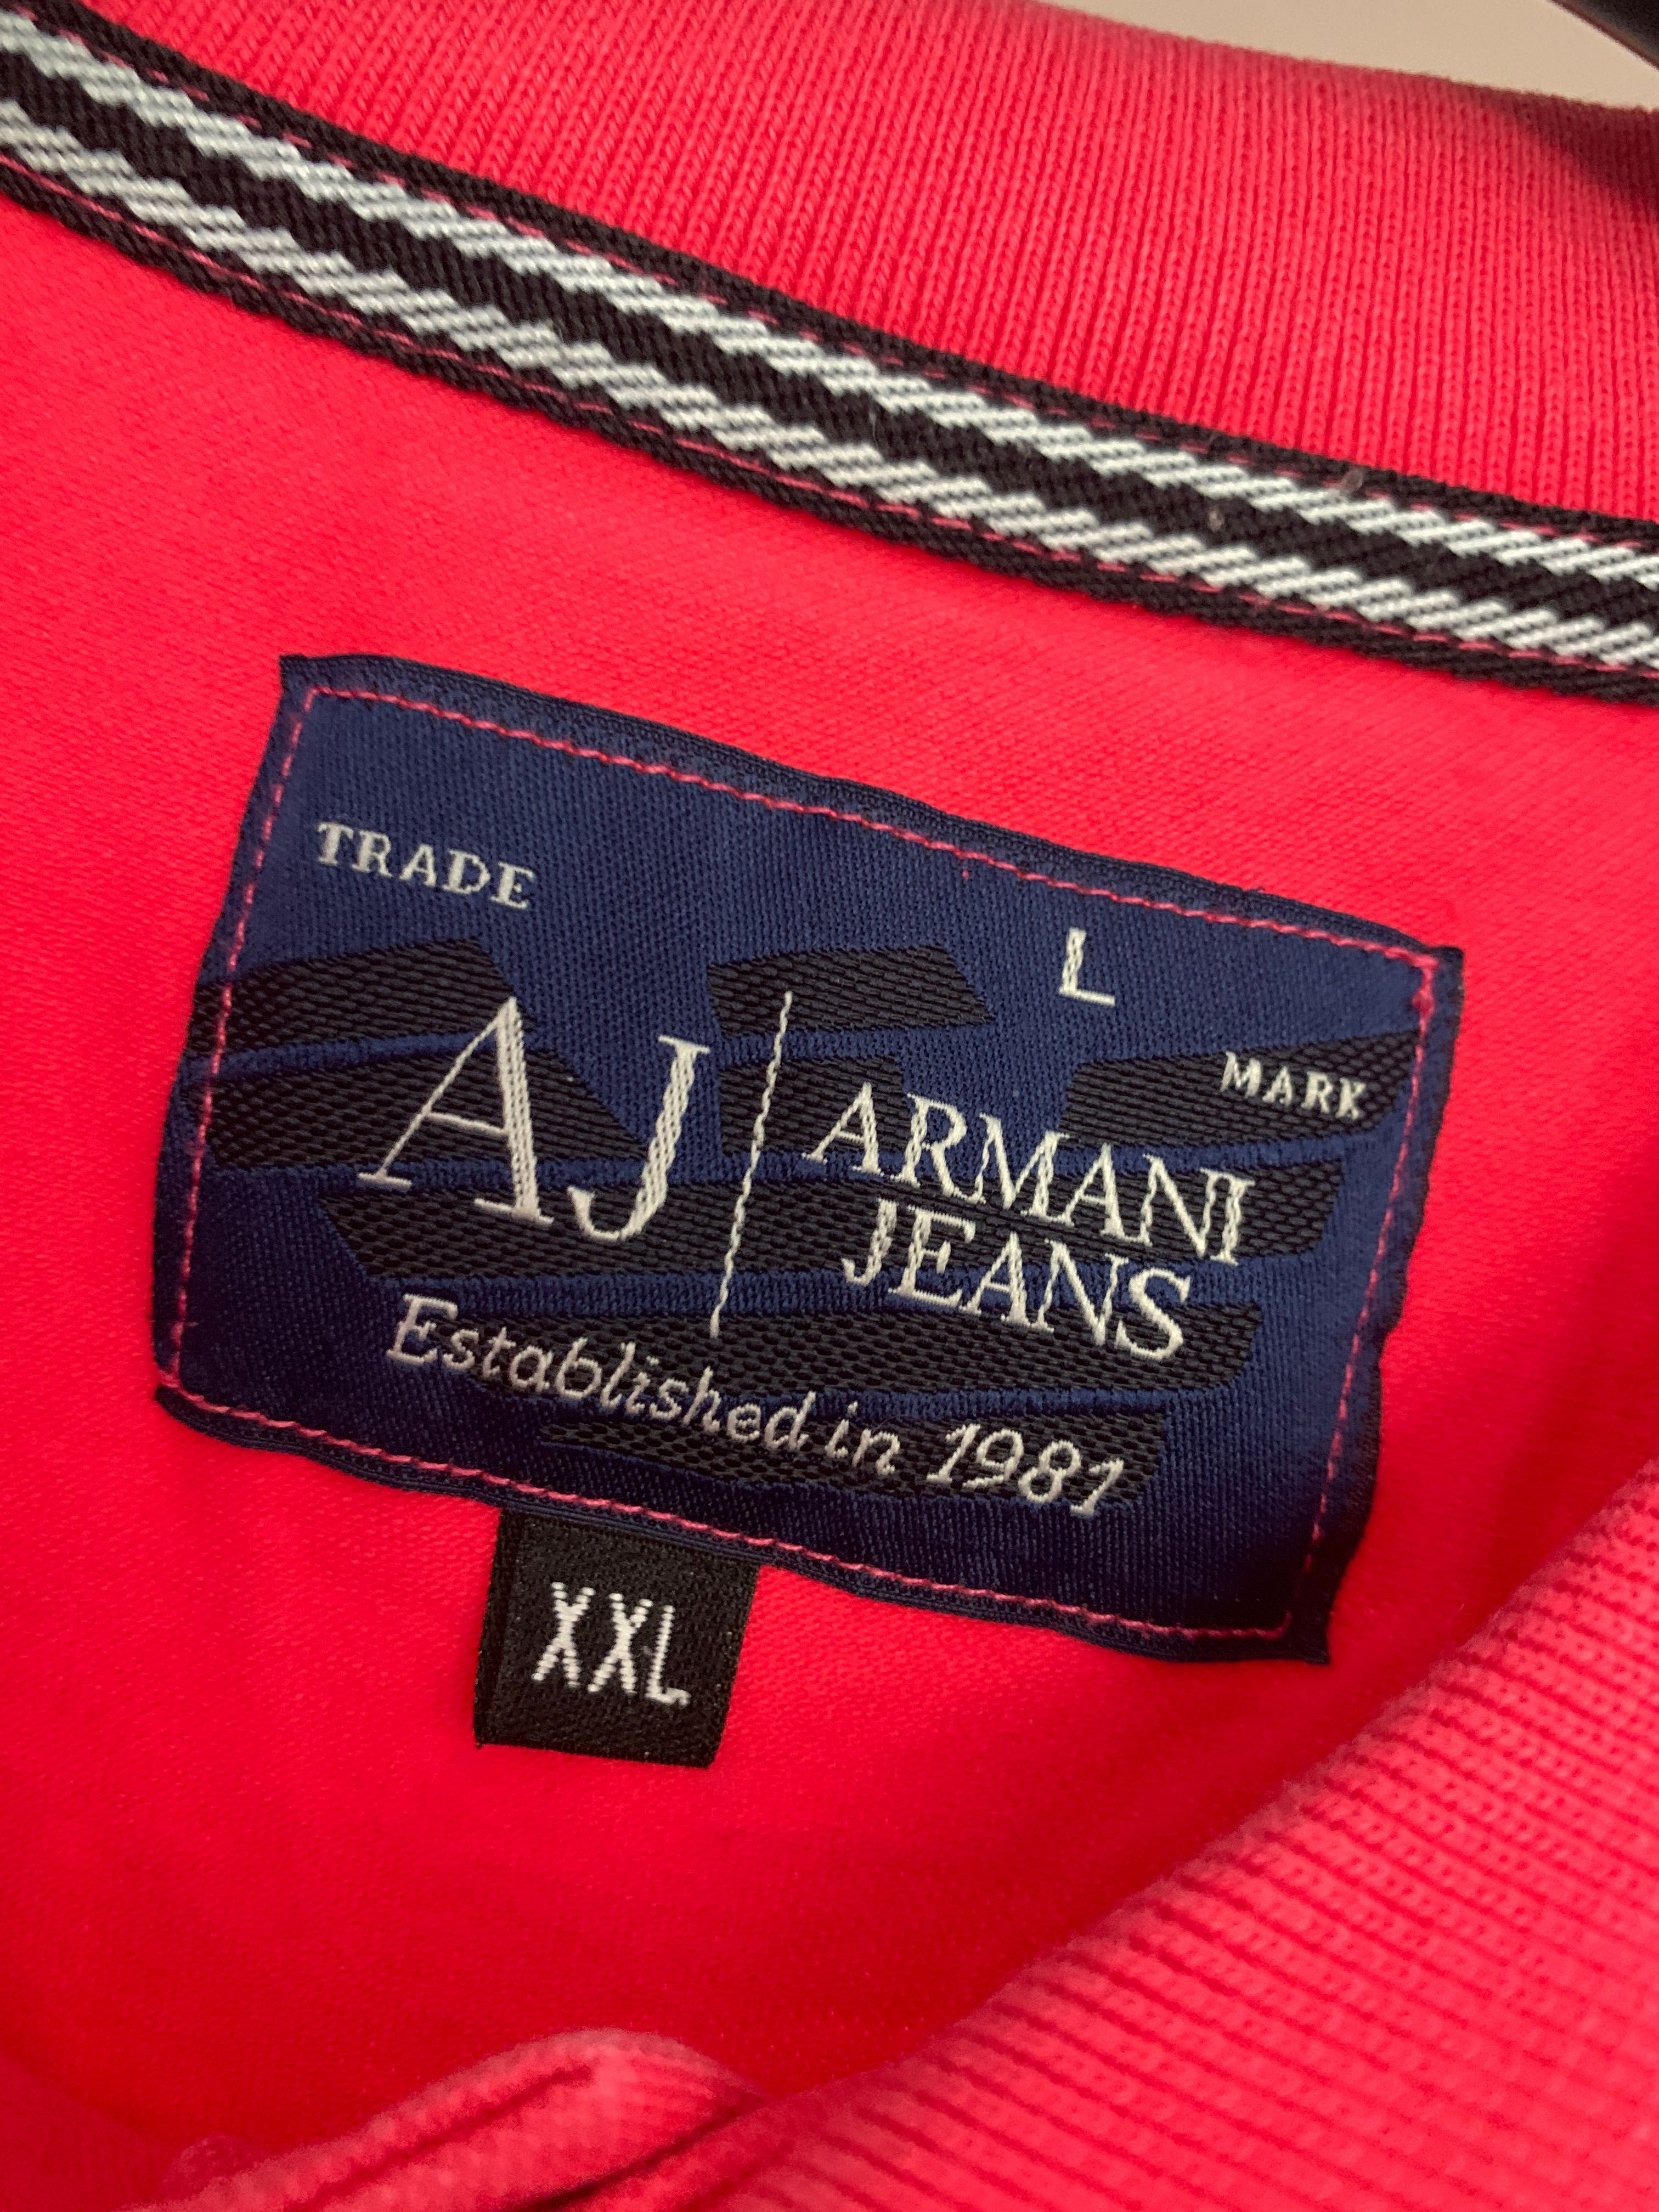 Polo połówka meska Armani jeans malinowa xl xxl elegancka